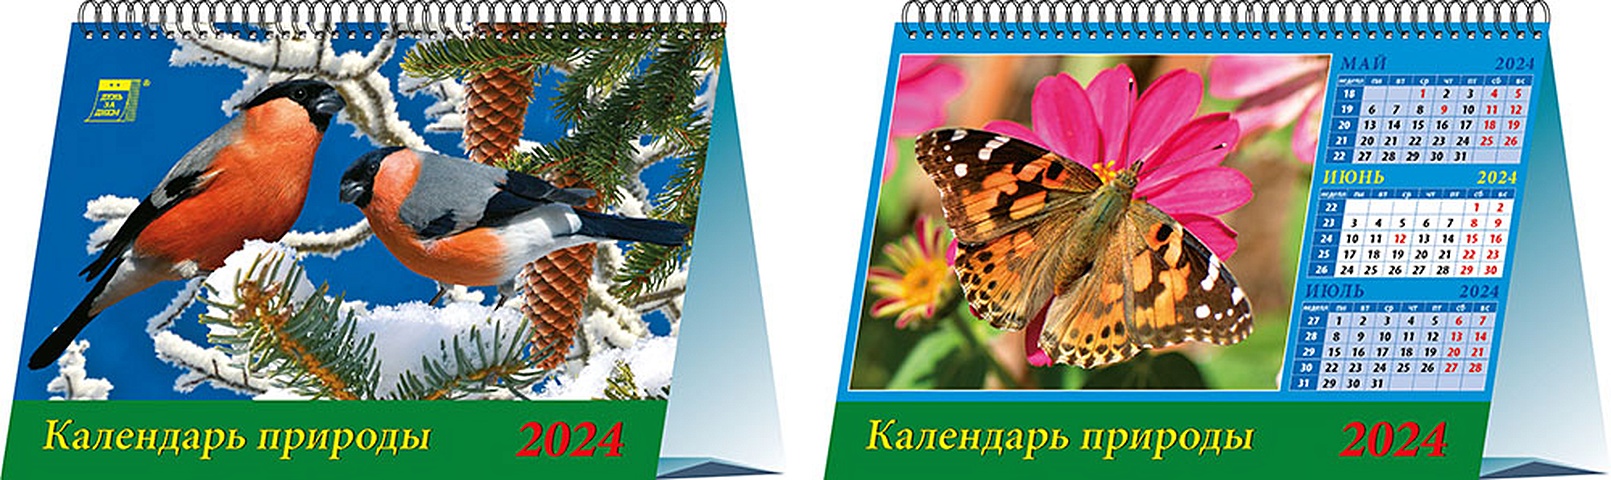 Календарь 2024г 200*140 Календарь природы настольный, домик сочиняй мечты календарь домик 2024 год хорошего настроения